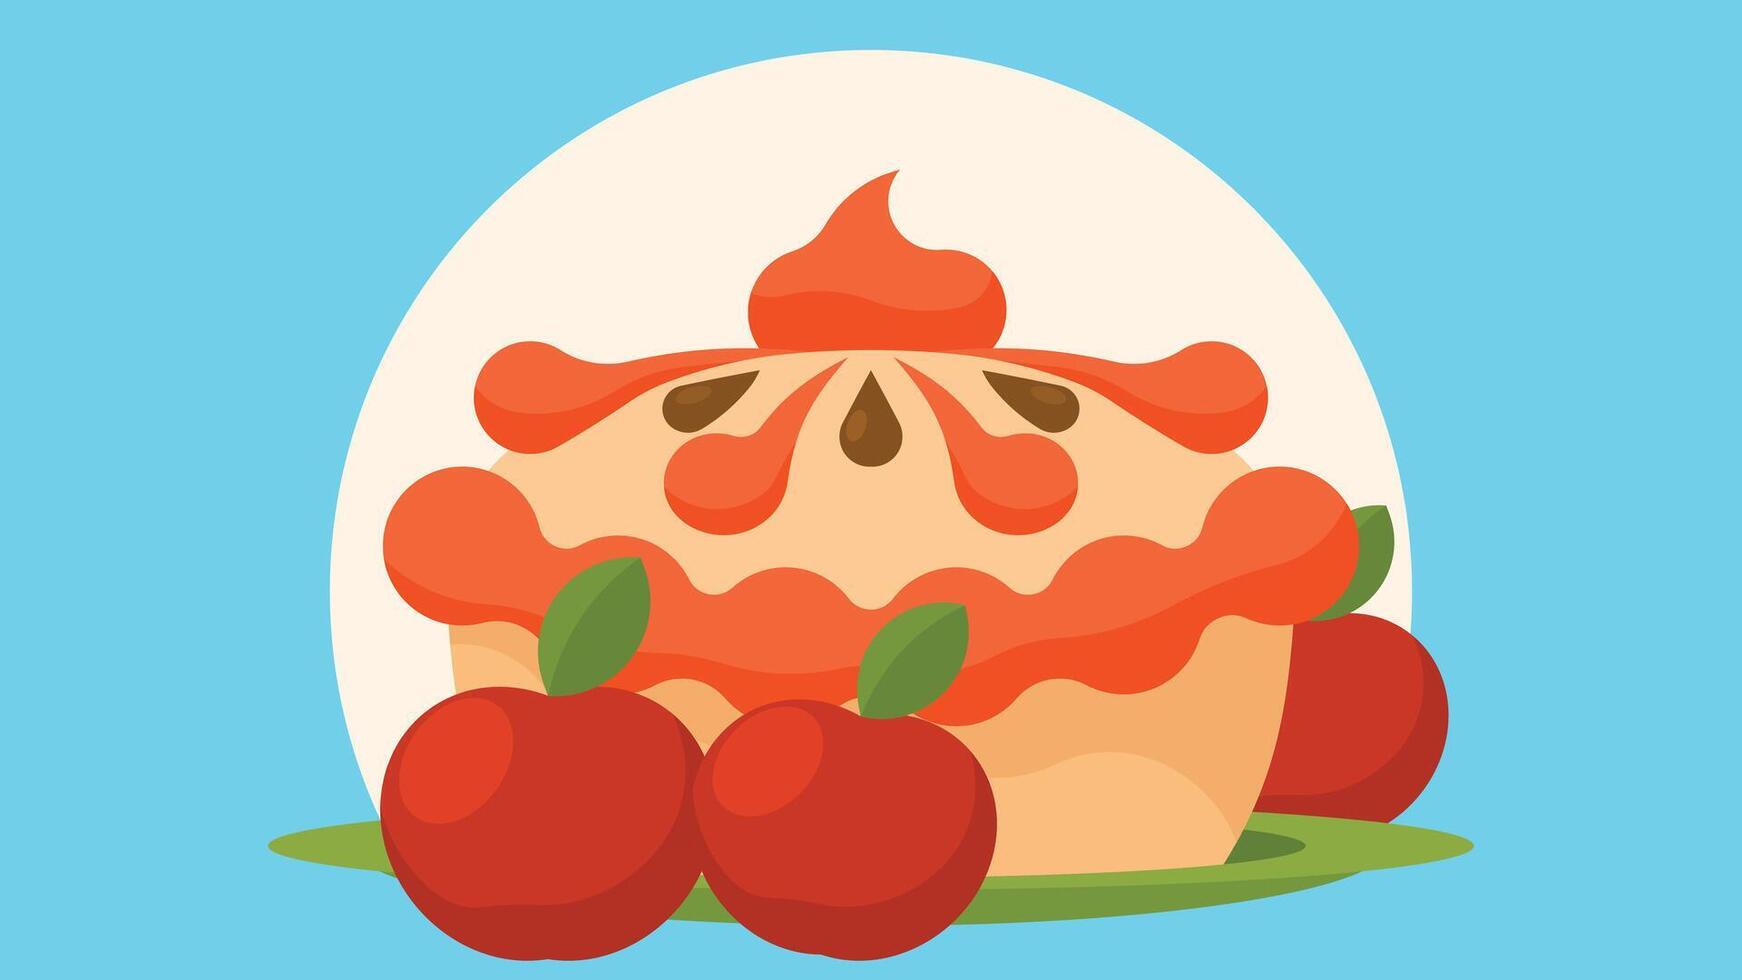 appel taart vector illustratie met vers appels